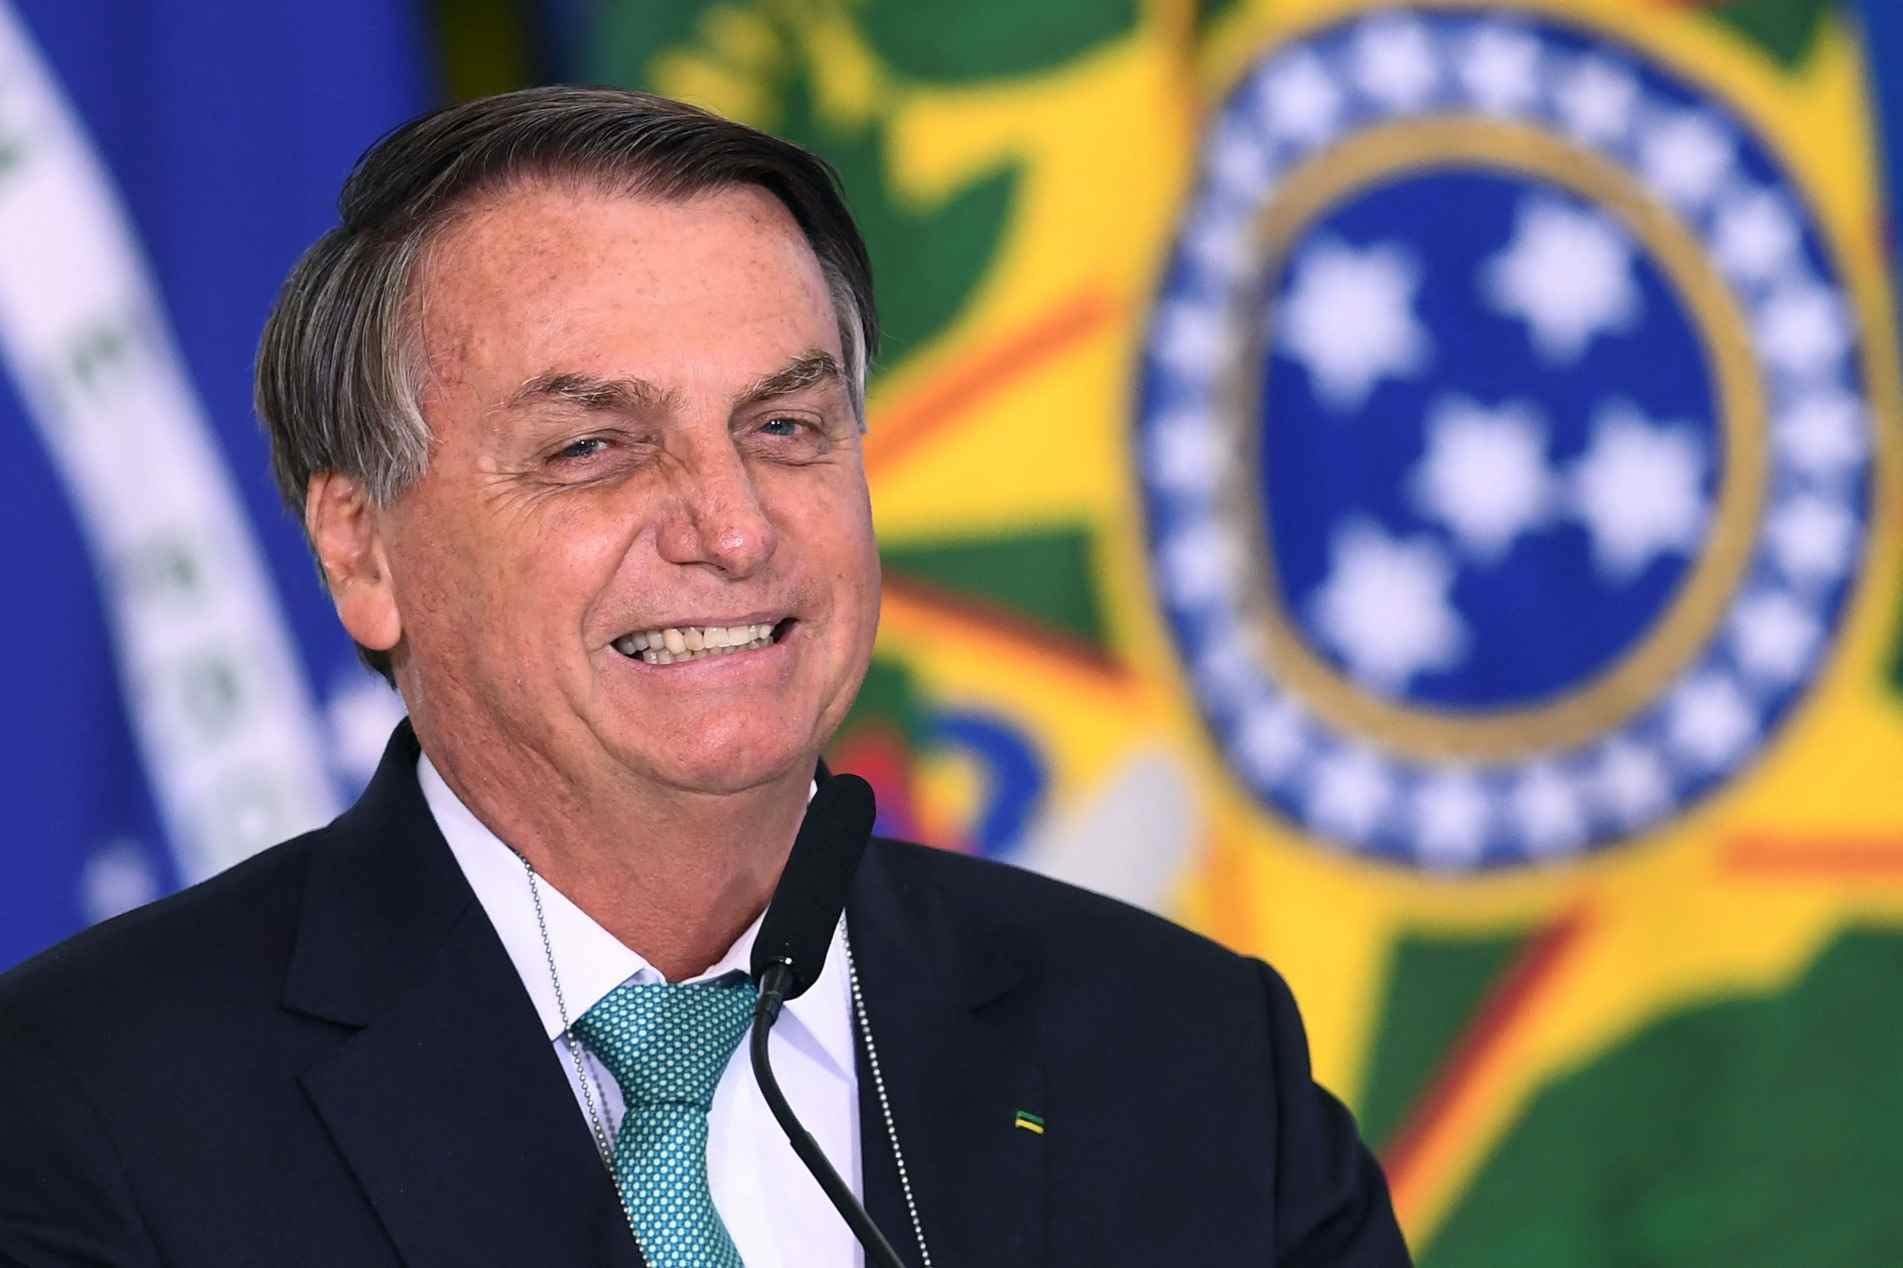 "Agora, em 2021 estamos na liderança. Agradeço quem votou em mim. Quem não votou peço que entre lá no site da Time e vote", Bolsonaro